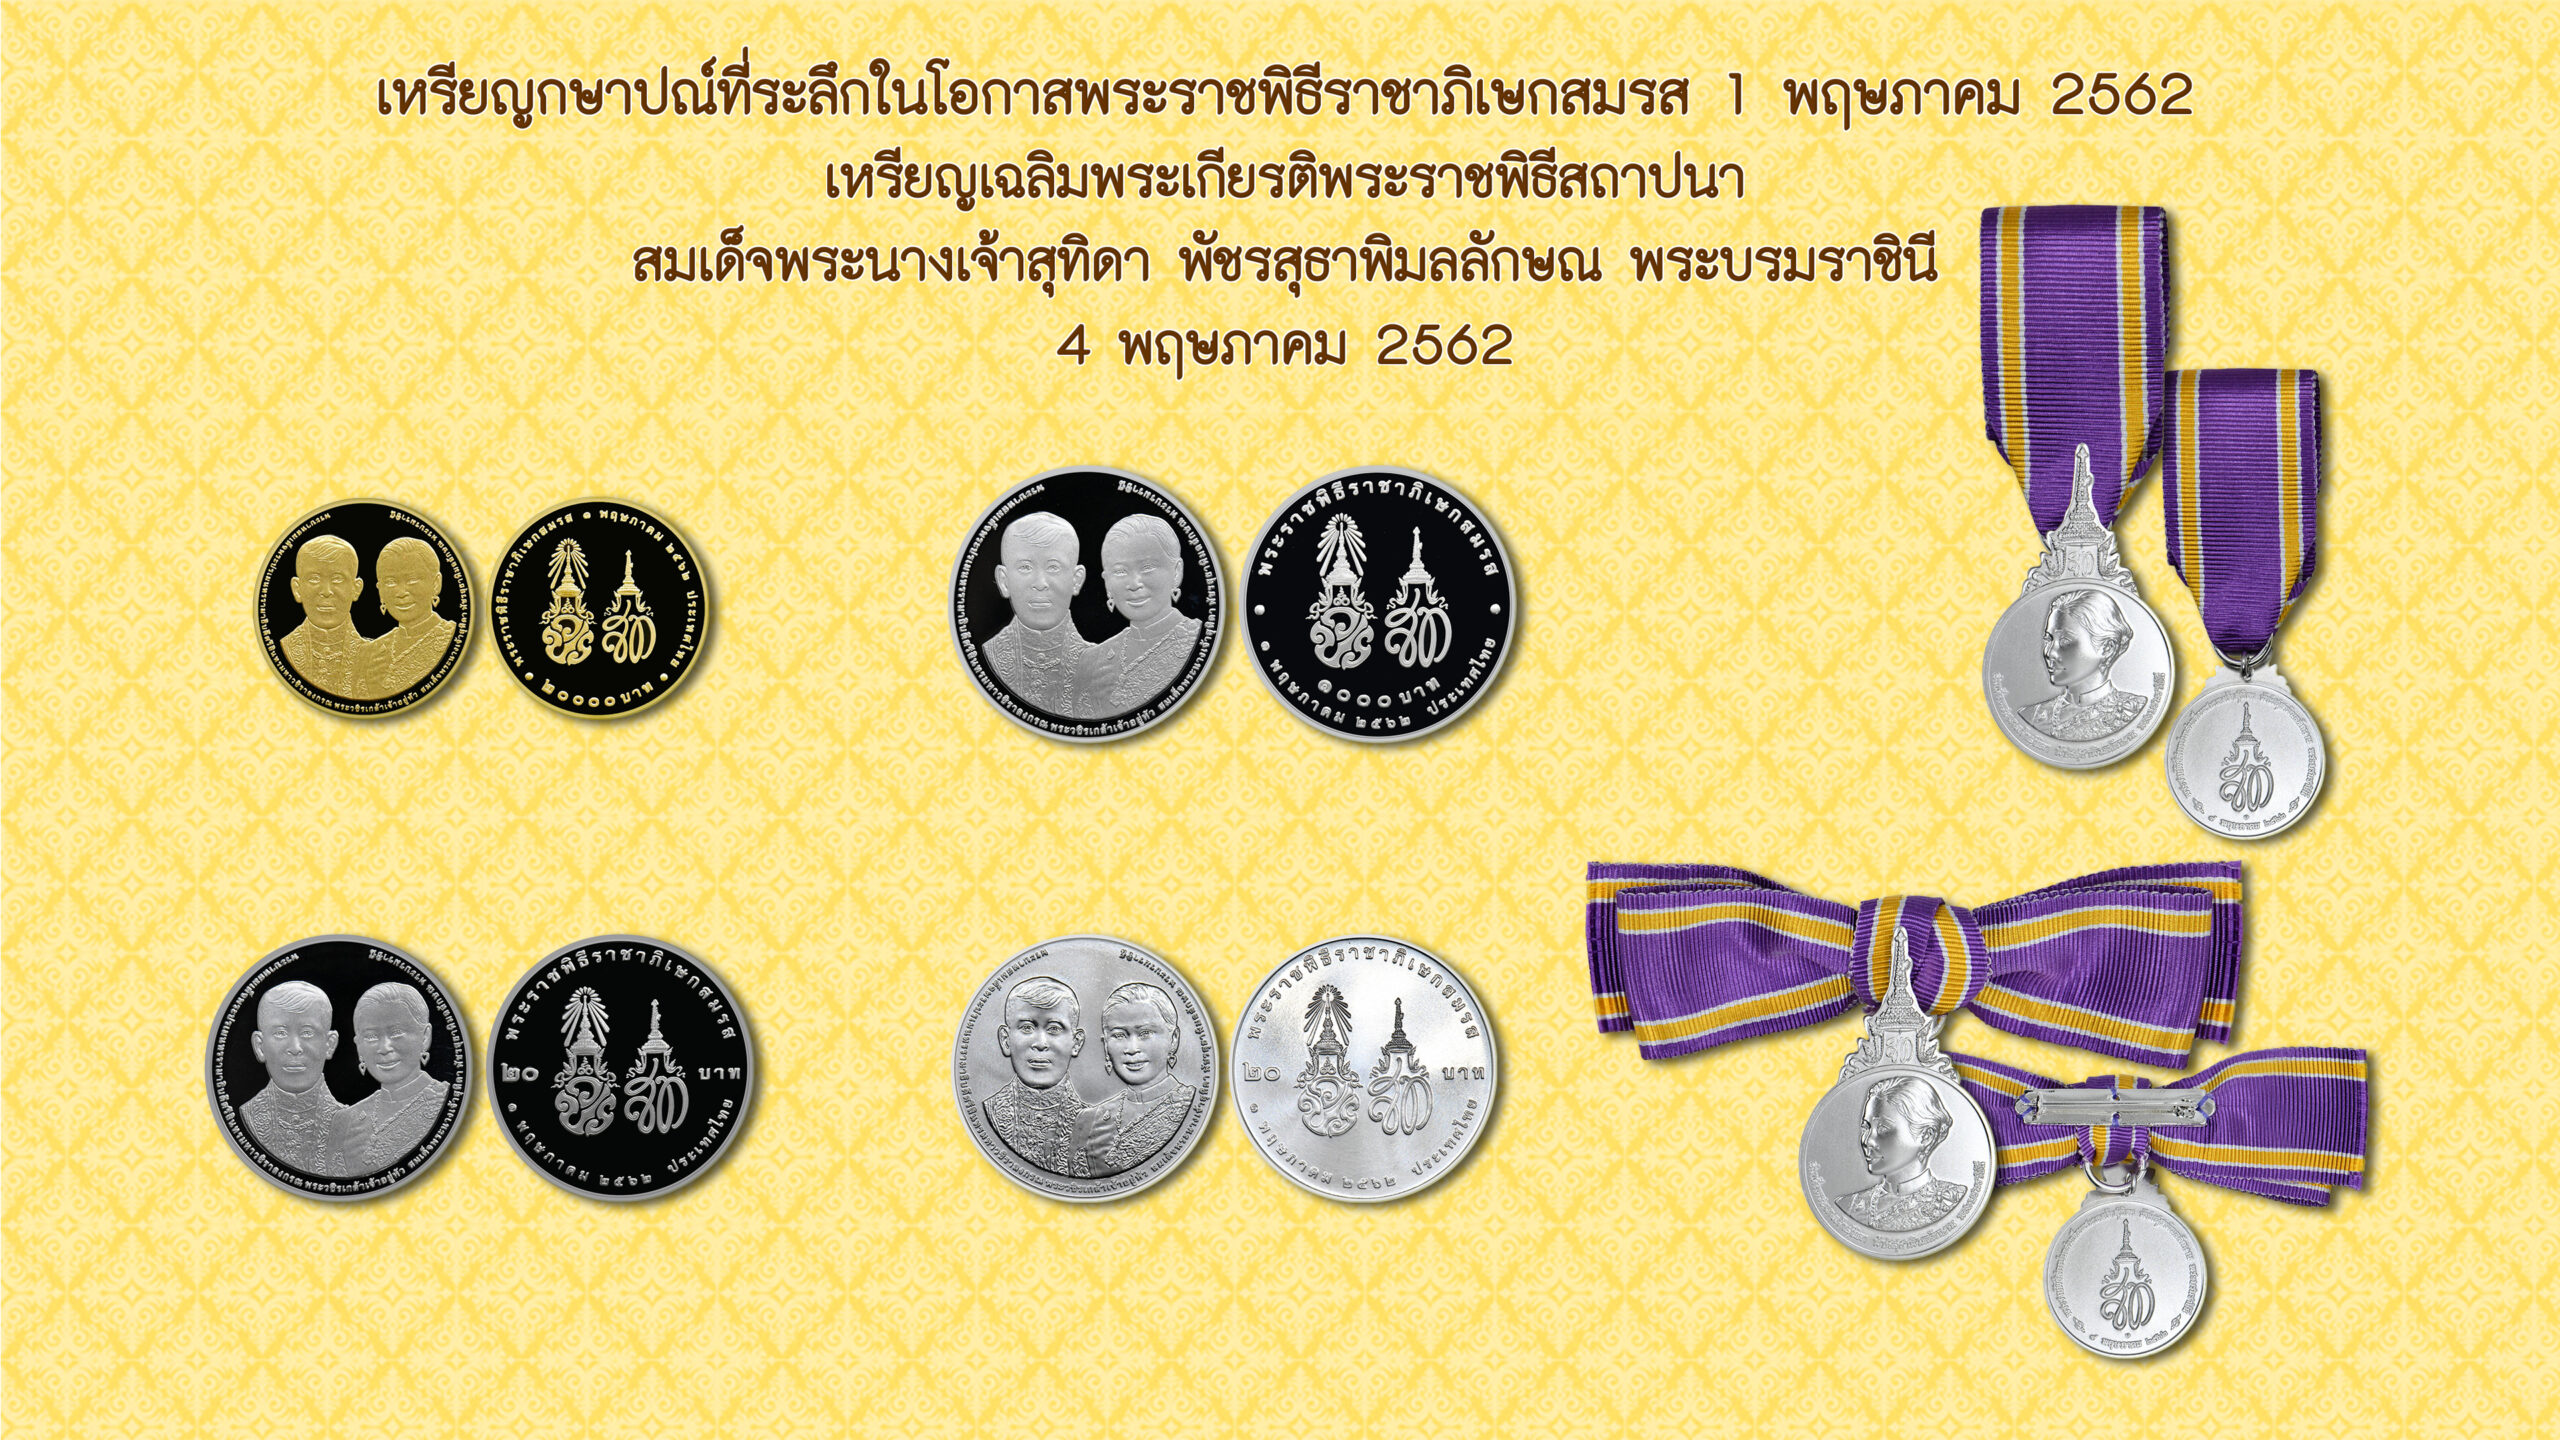 ธนารักษ์เปิดสั่งจองเหรียญกษาปณ์ที่ระลึก ‘พระราชพิธีราชาภิเษกสมรส-พระราชพิธีสถาปนาฯ’ เริ่ม 29 เม.ย. 2564